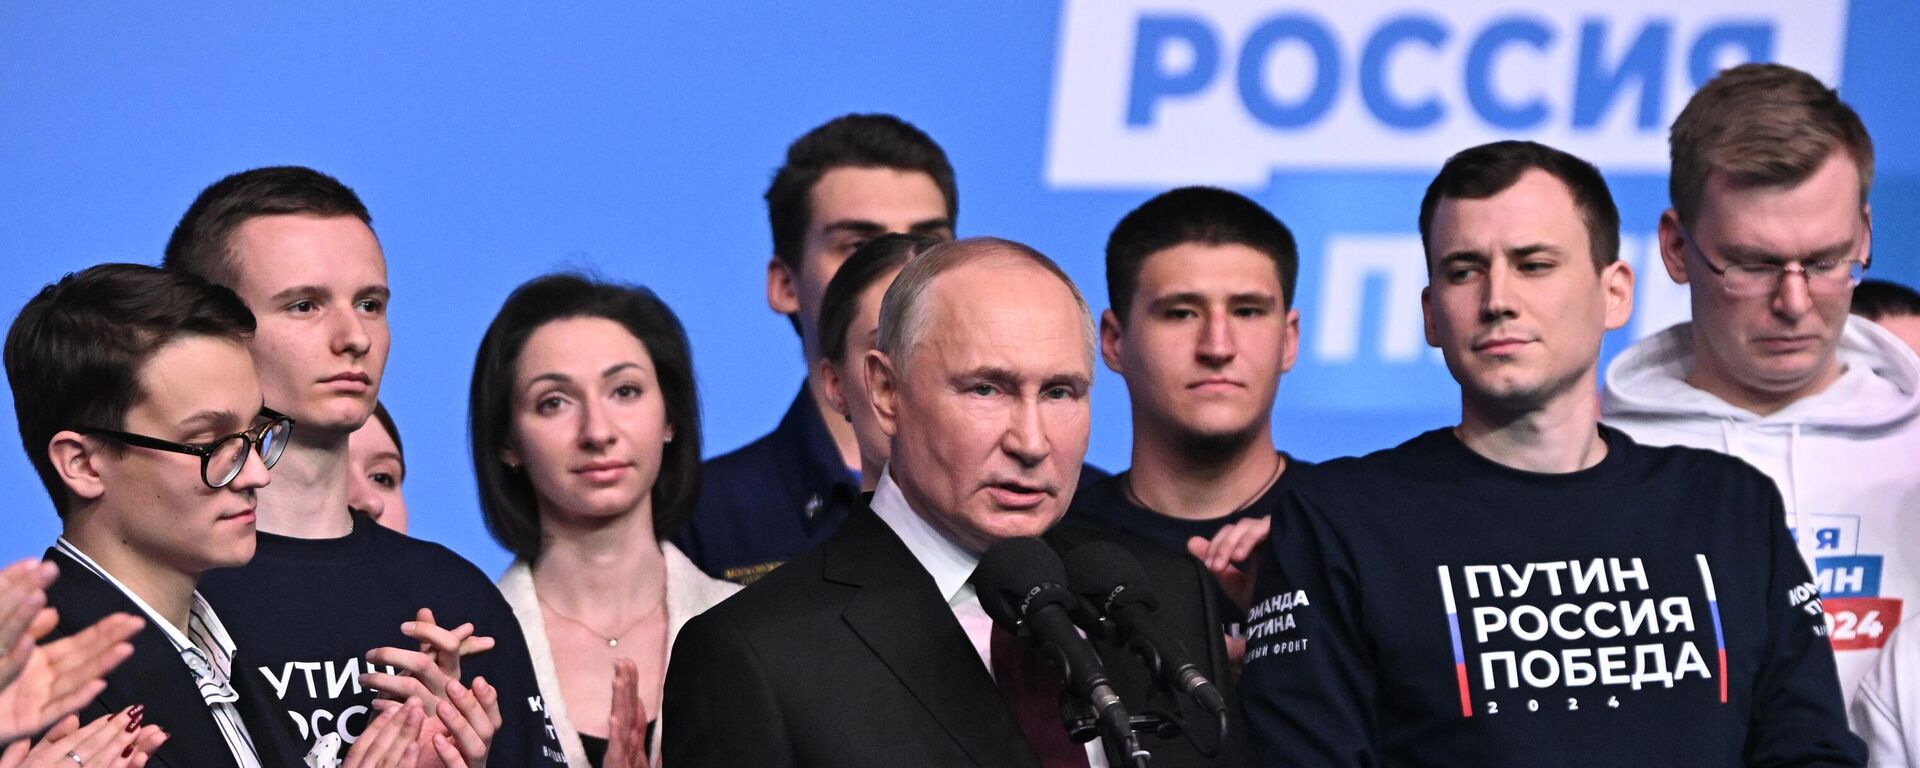 Candidato presidencial russo, atual presidente russo, Vladimir Putin, em reunião com representantes na sede eleitoral, 17 de março de 2024 - Sputnik Brasil, 1920, 17.03.2024